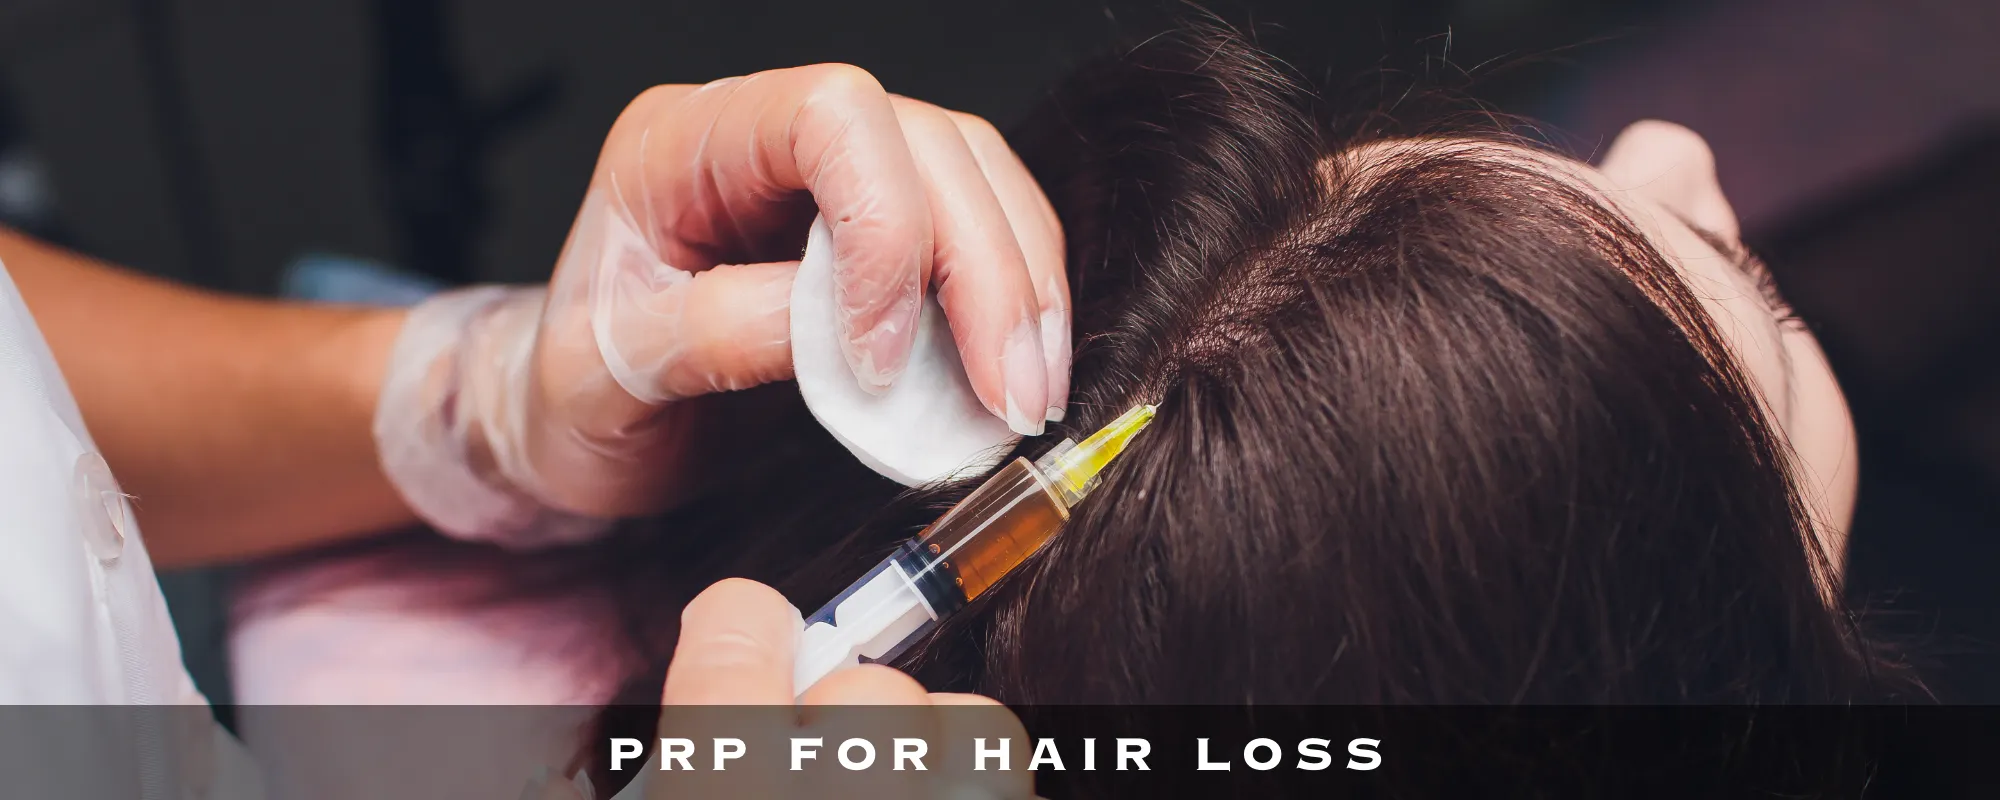 PRP FOR HAIR LOSS